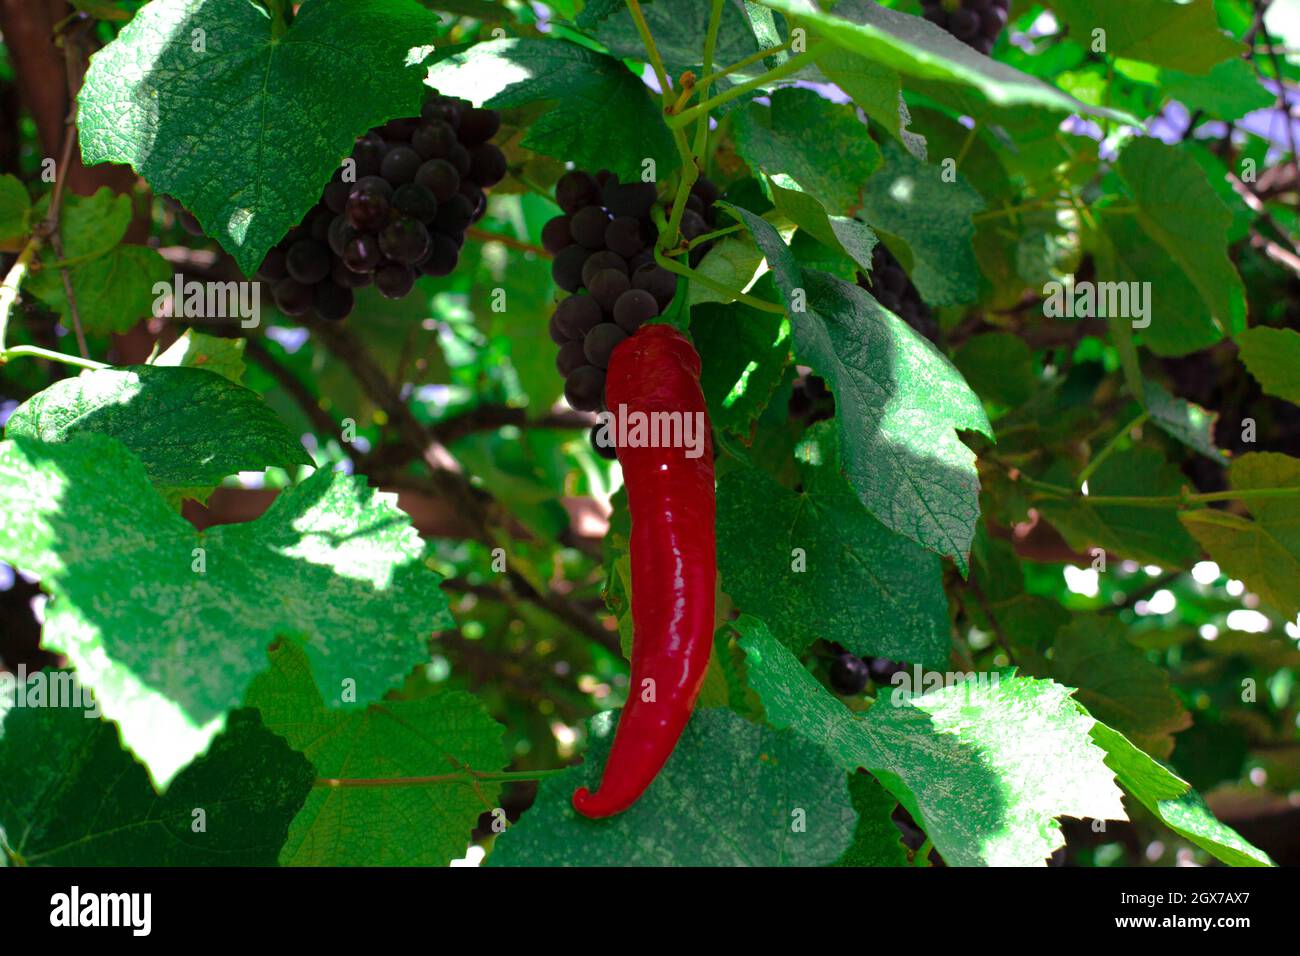 Il peperoncino rosso crebbe su una pianta d'uva. Il risultato non può soddisfare sempre le aspettative. Foto Stock